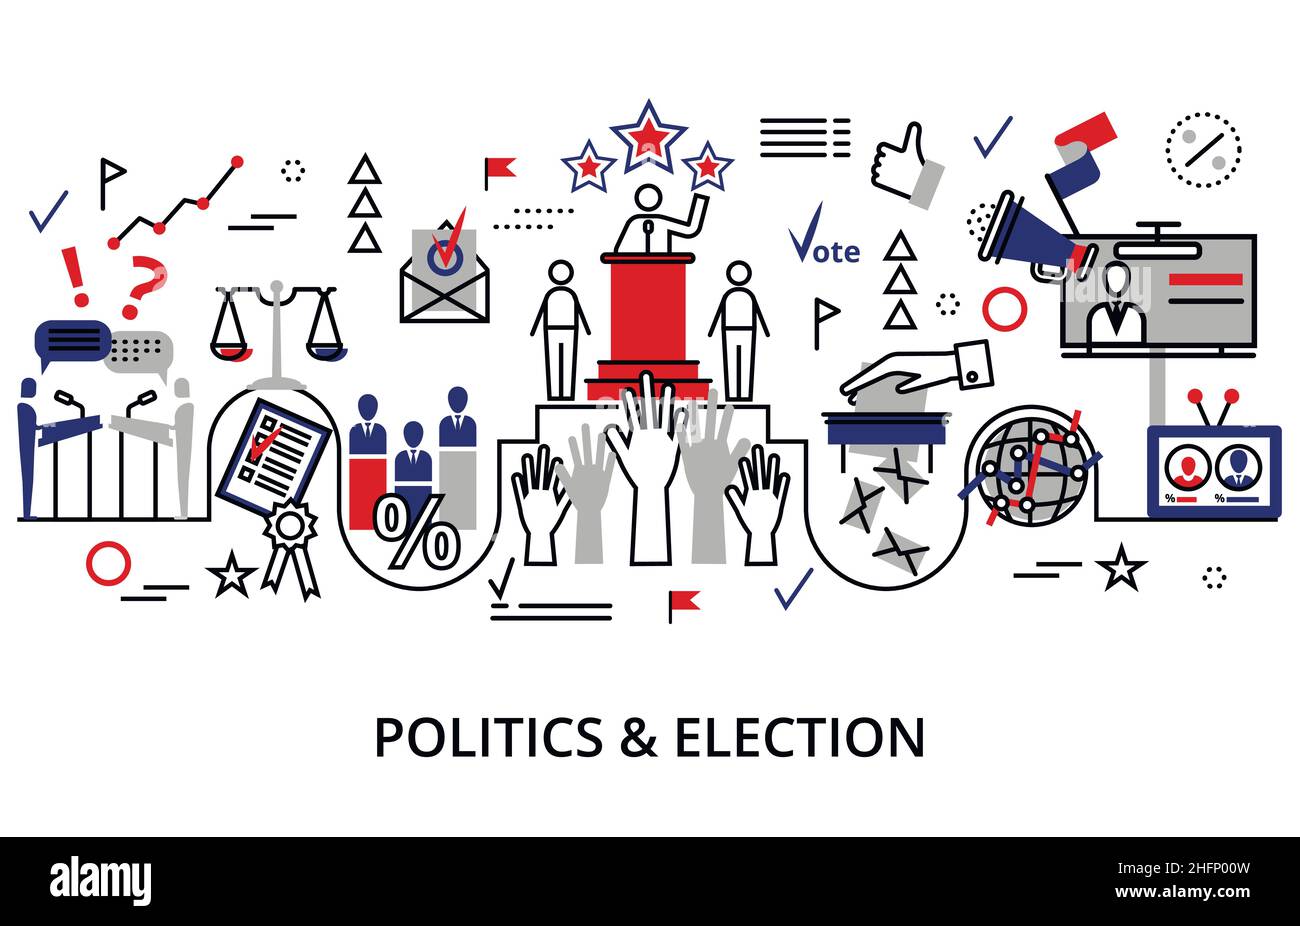 Konzept von Politik und Wahl, moderne flache Vektor-Illustration Stock Vektor